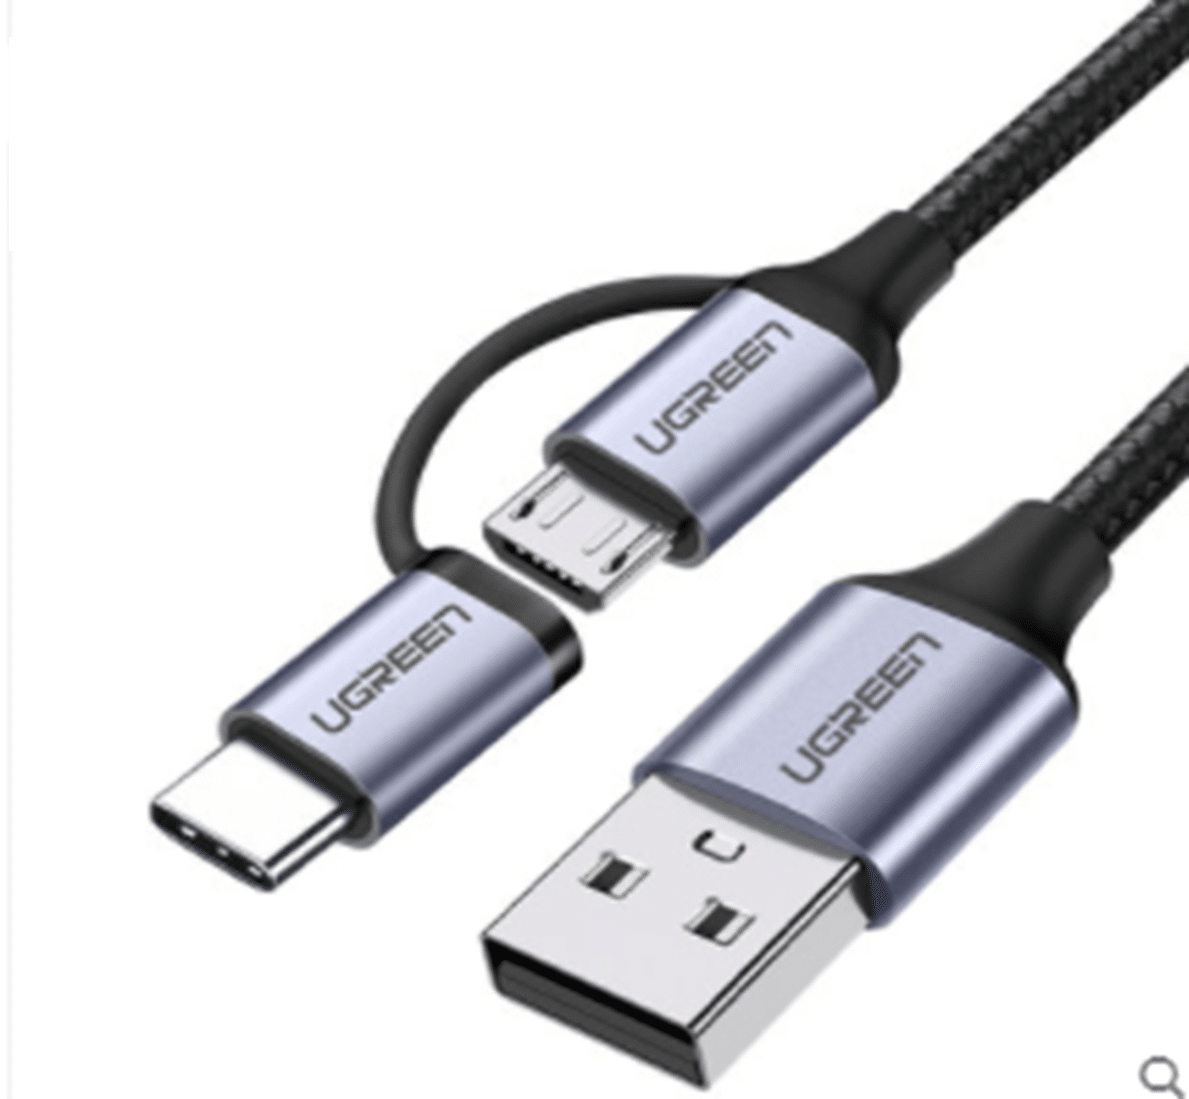 Civic Voorkomen Cadeau 2-in-1 USB-C naar Micro USB en USB-A kabel kopen? Bestel nu - Morgen in  huis.